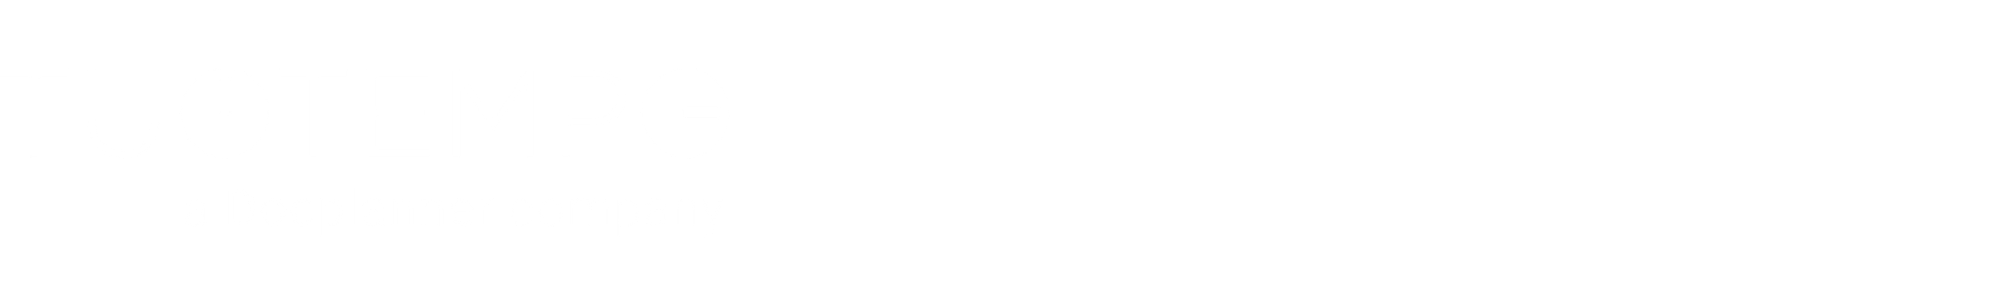 [NEW] Header LP Logos - Parceiros TuoTempo REDCHECK